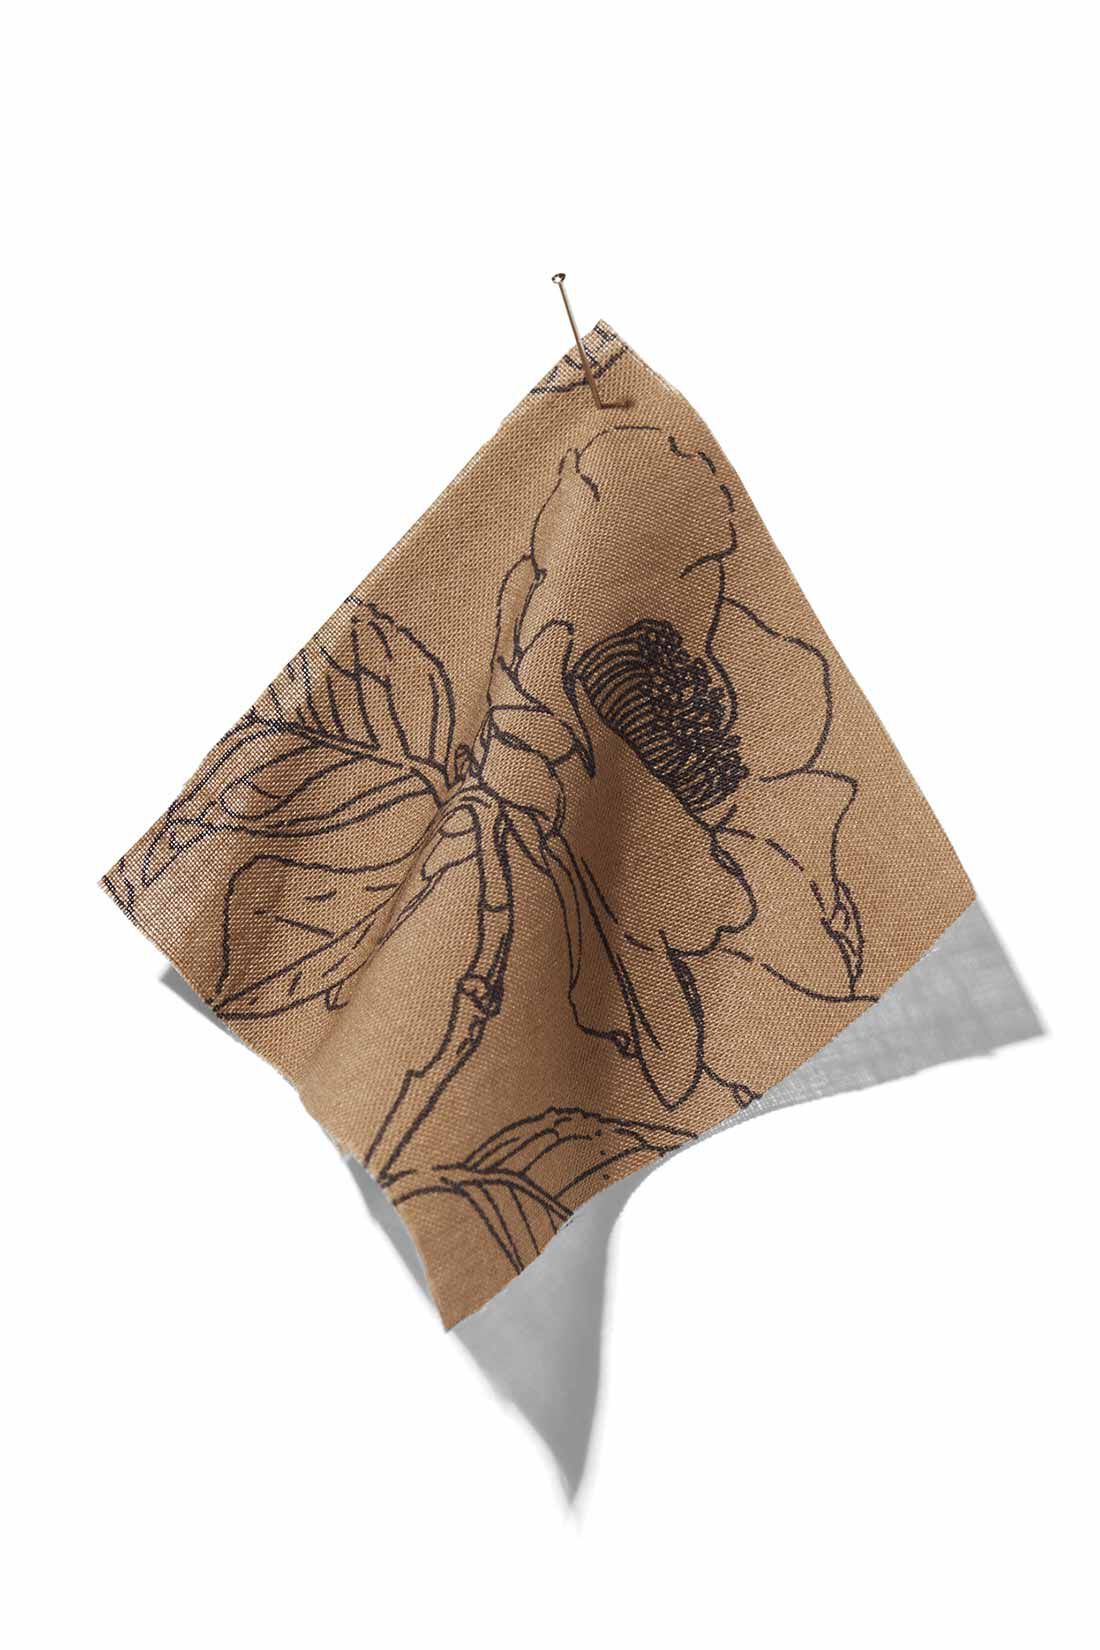 IEDIT|牧野植物園×IEDIT[イディット]コラボ　ヤブツバキの総柄スカート〈カーキブラウン〉|薄く、軽やかな綿100％の布はく素材を使用。線は原画に近い墨色に、アーシーなカーキブラウンを配色。